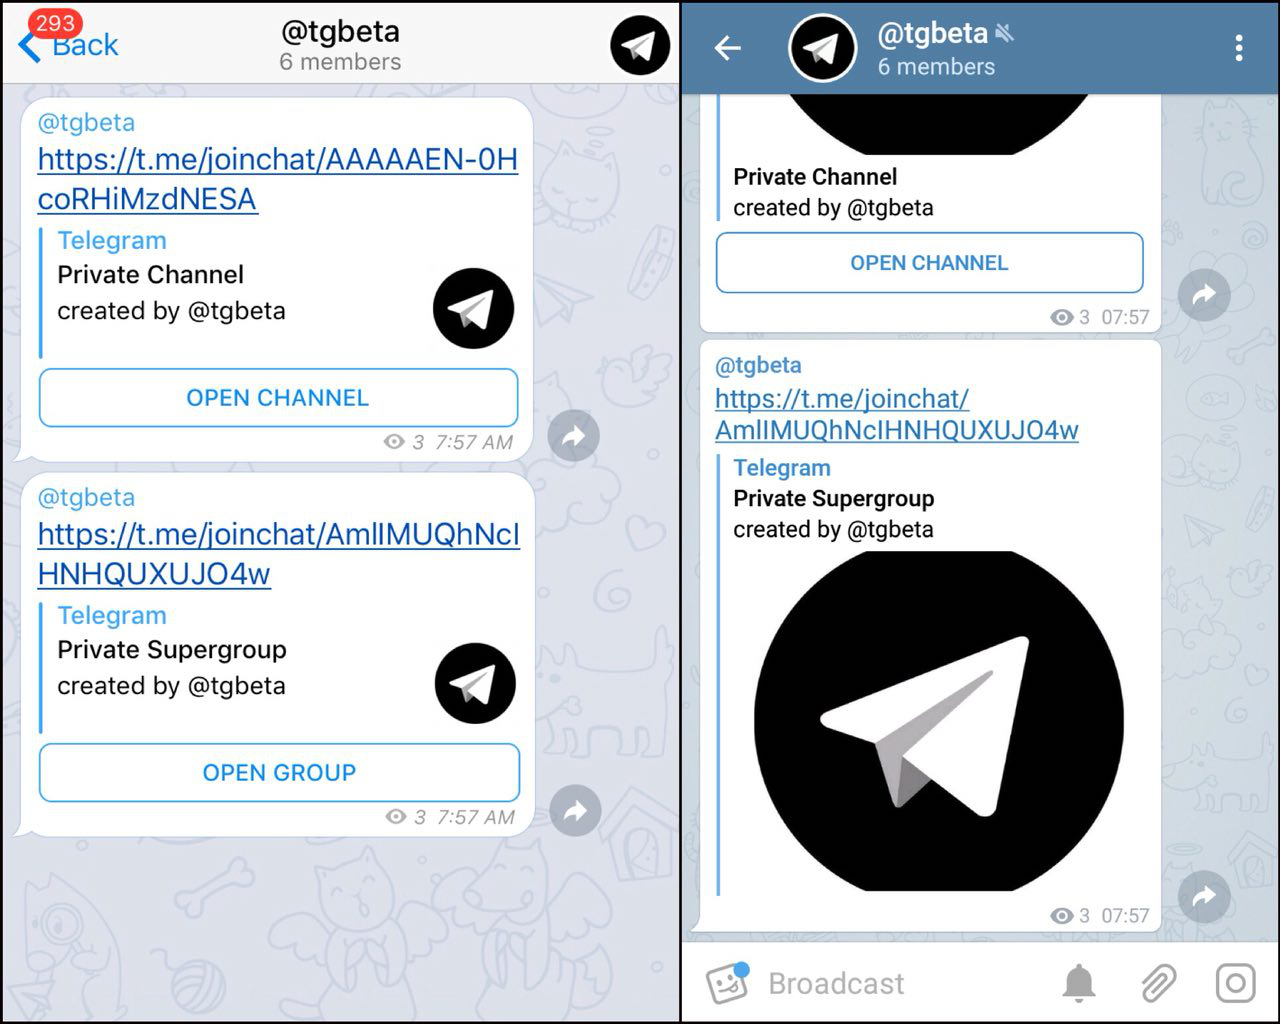 Обновить телеграмм до последней версии бесплатно на русском языке на андроид без регистрации фото 113